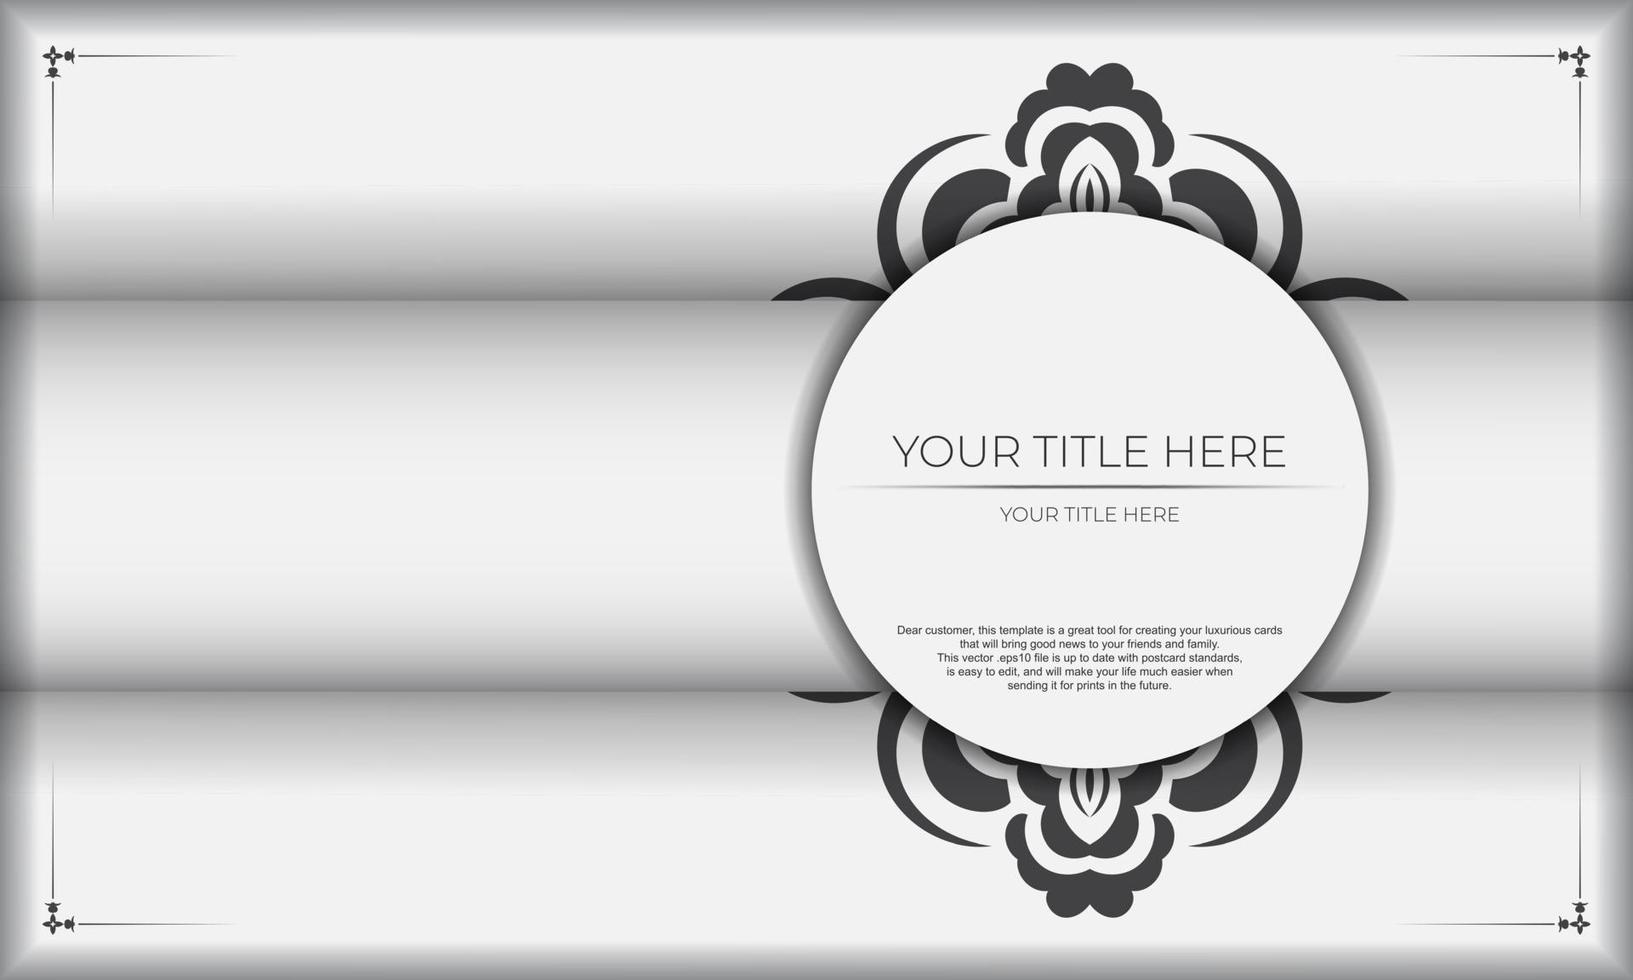 vit baner av underbar vektor mönster med mandala ornament och plats för din text. inbjudan kort design med mandala mönster.